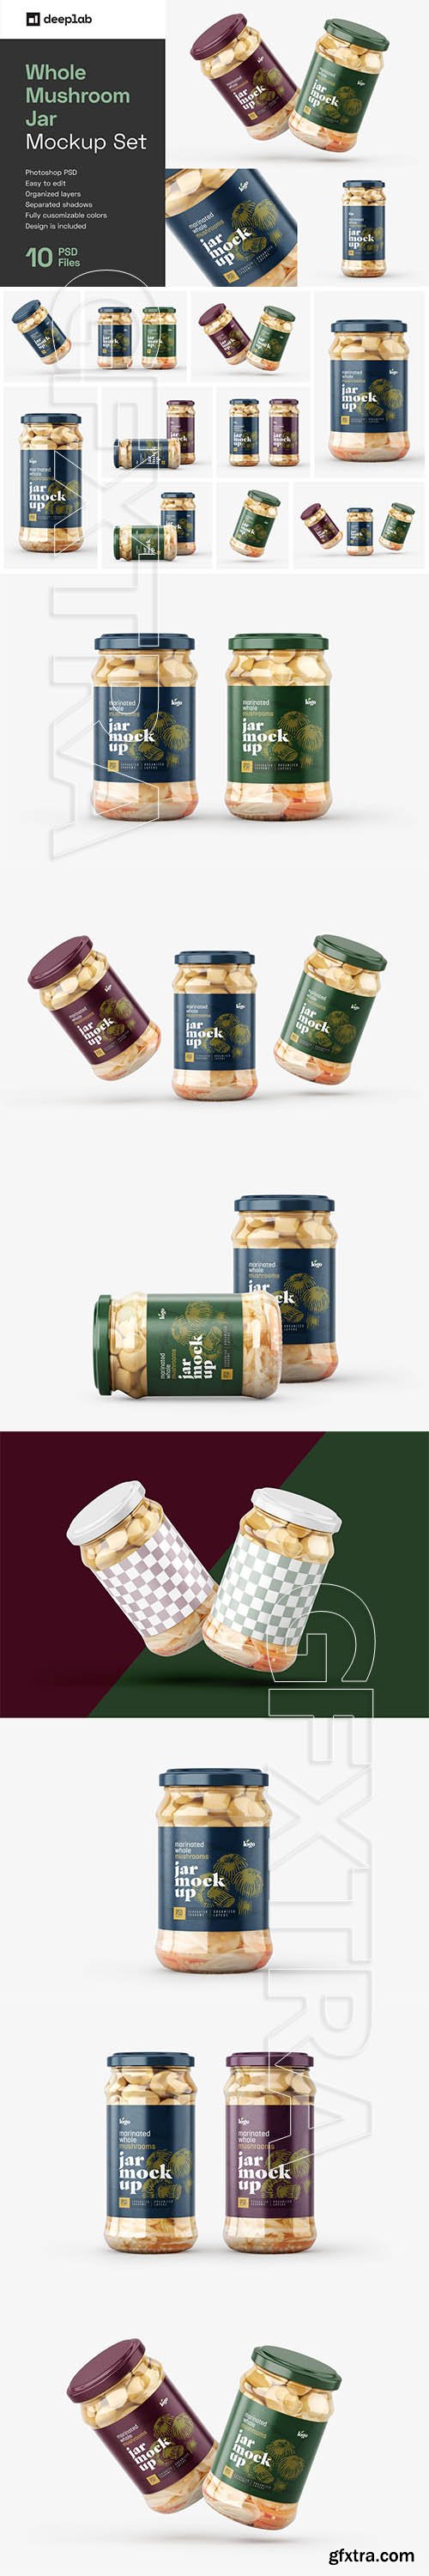 CreativeMarket - Whole Mushroom Jar Mockup Set 5887130